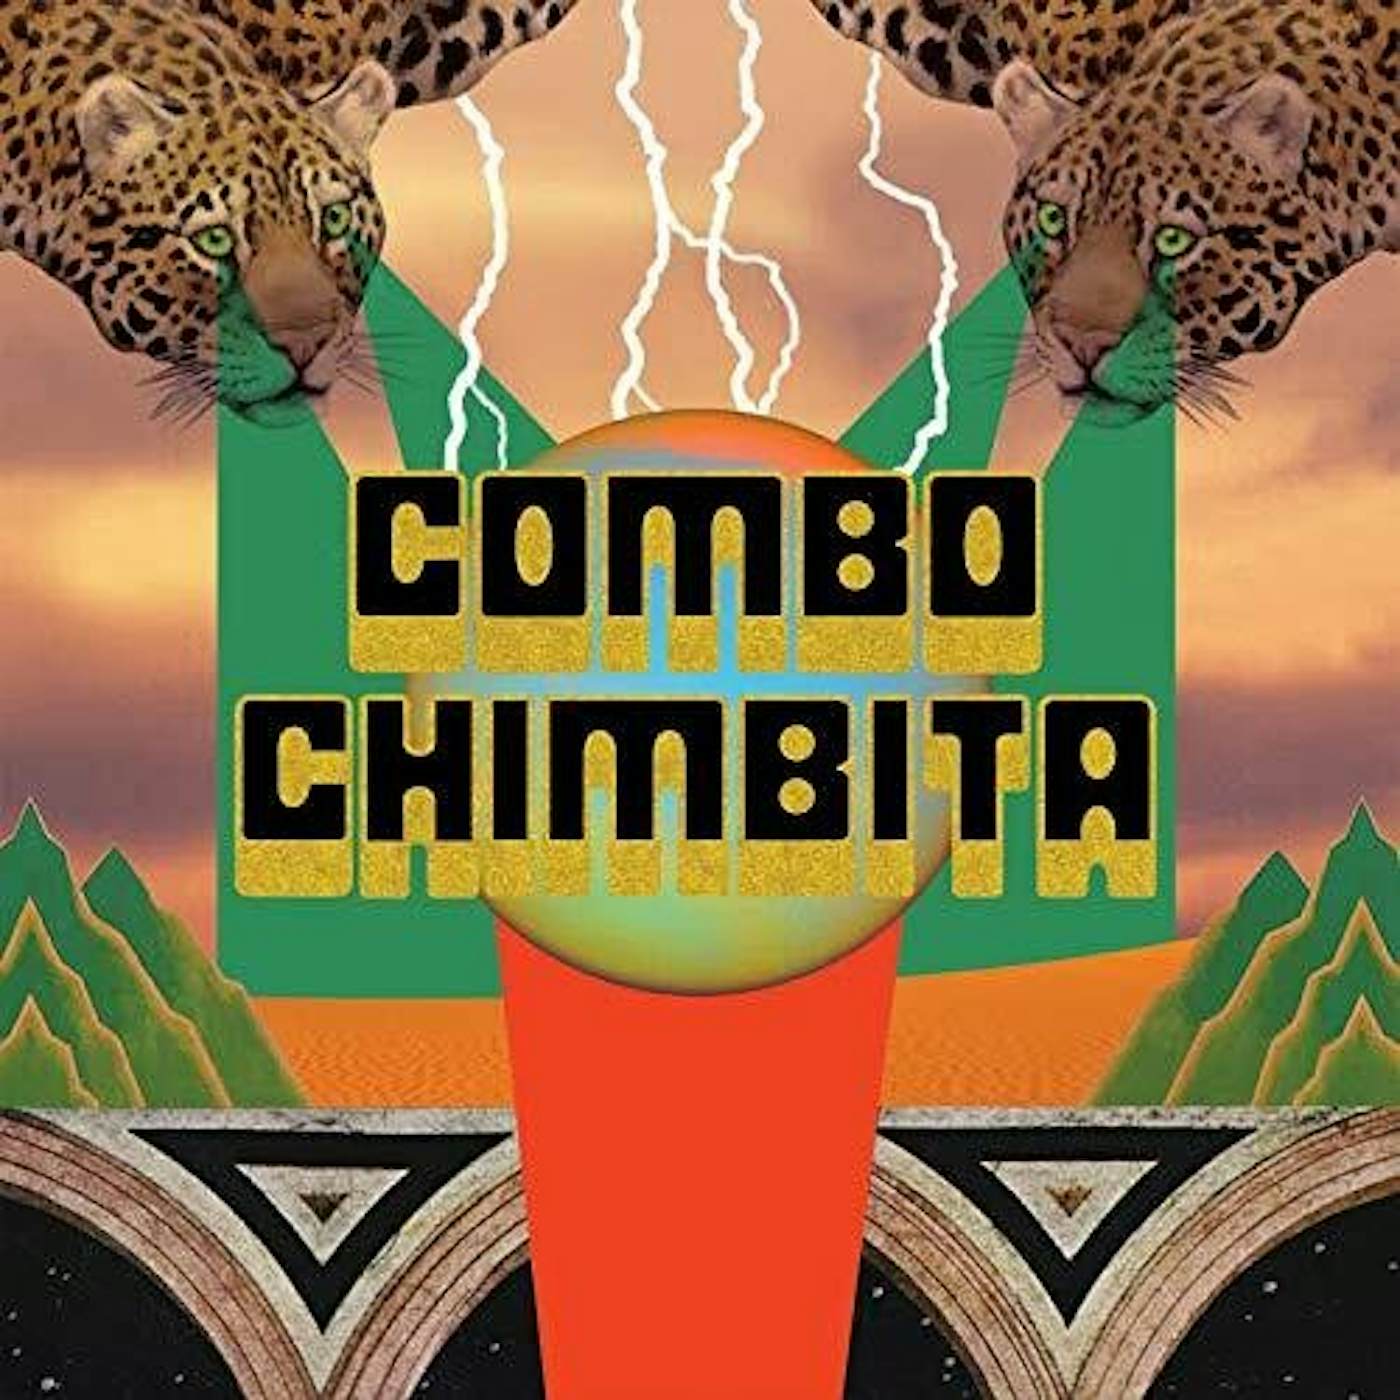 Combo Chimbita El Corredor Del Jaguar Vinyl Record